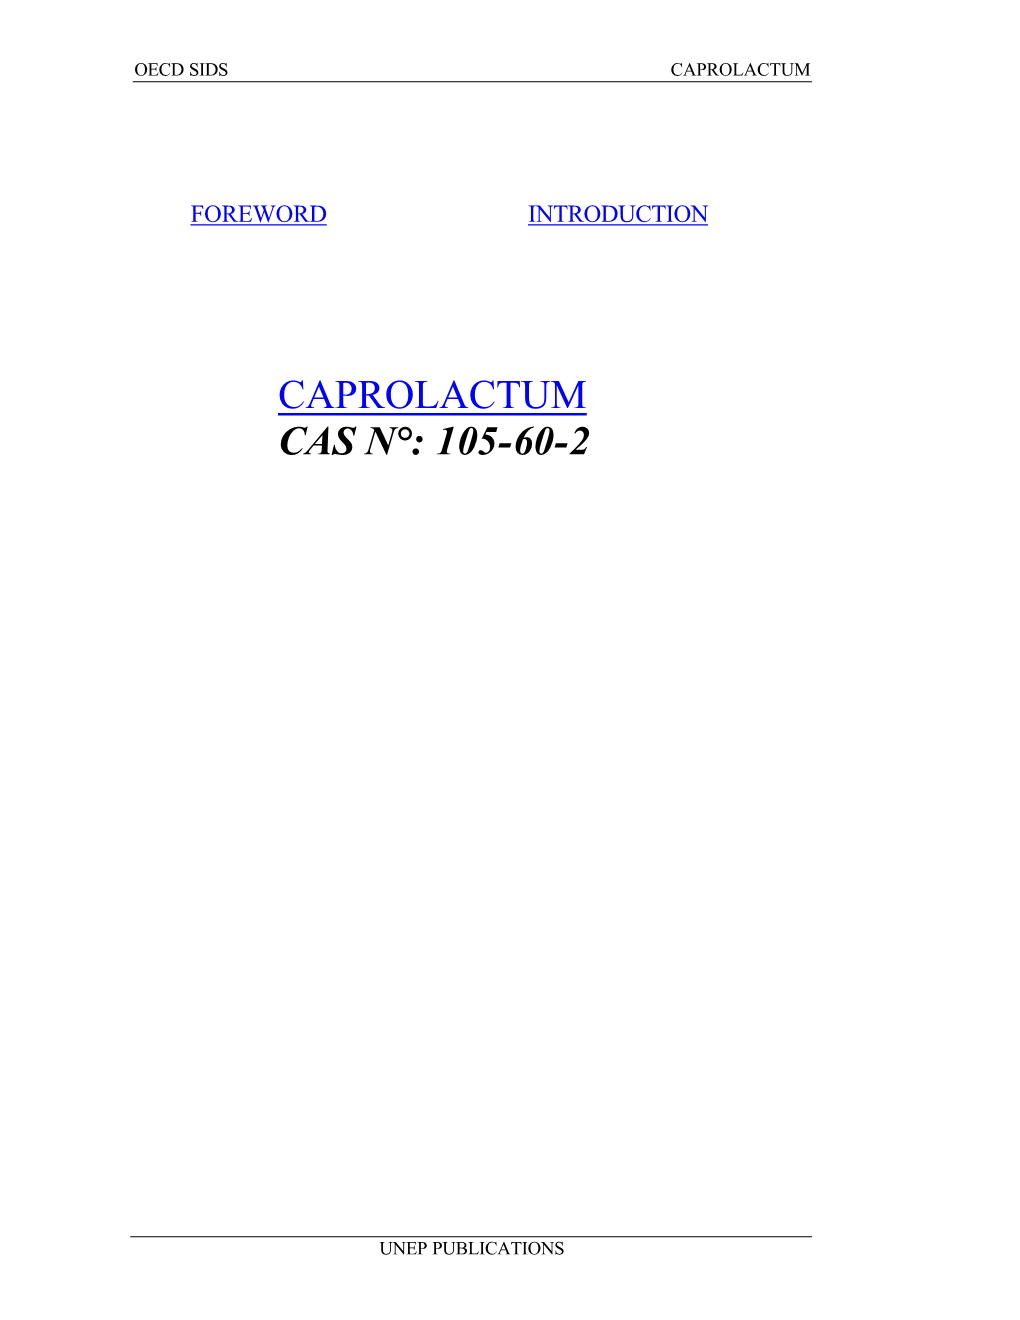 Caprolactum Cas N°: 105-60-2